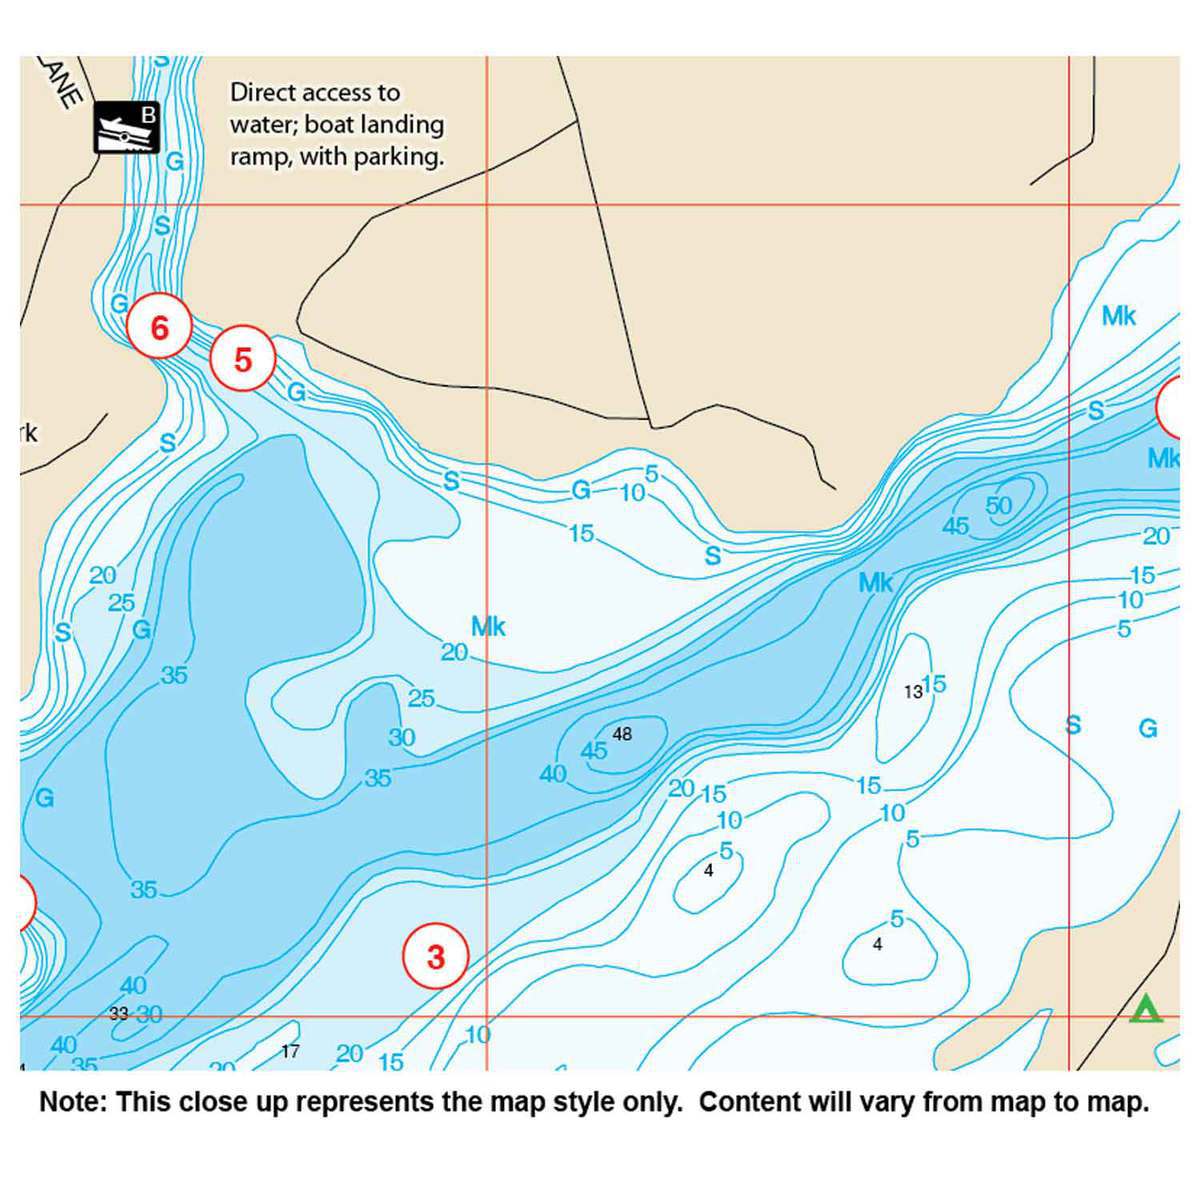 Lake Minnetonka MN Fishing Reports, Maps & Hot Spots